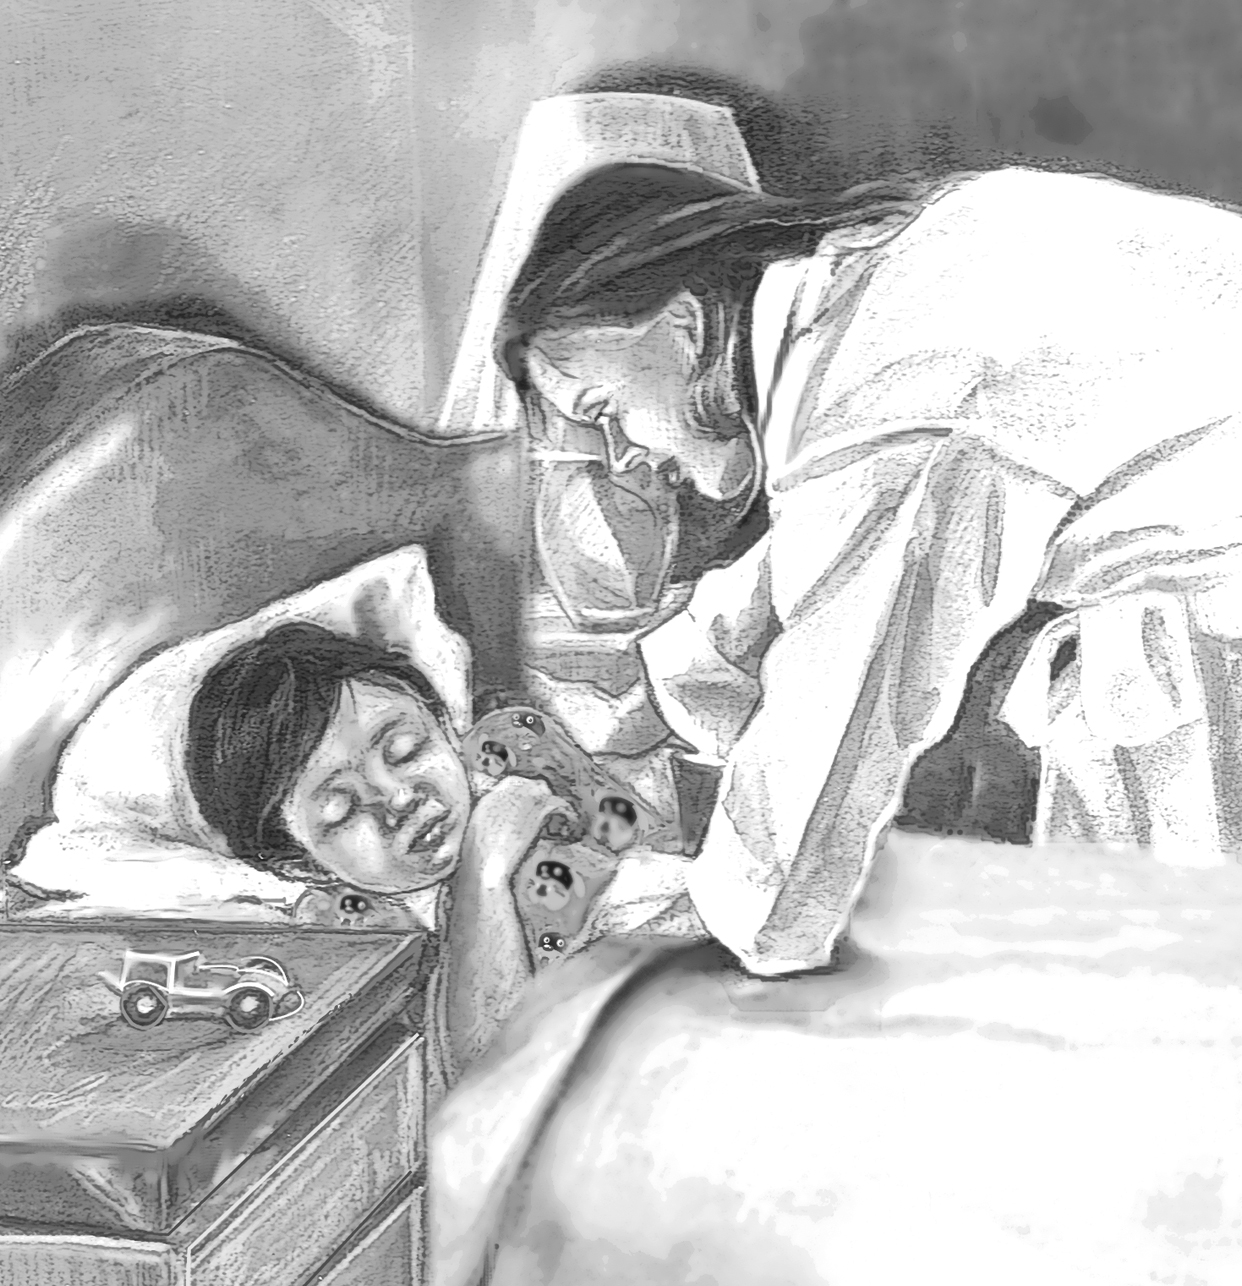 Сын лижет спящую мать. Кровосмешение рисунки. Порнографические иллюстрации детей. Иллюстрации к эротическим рассказам.